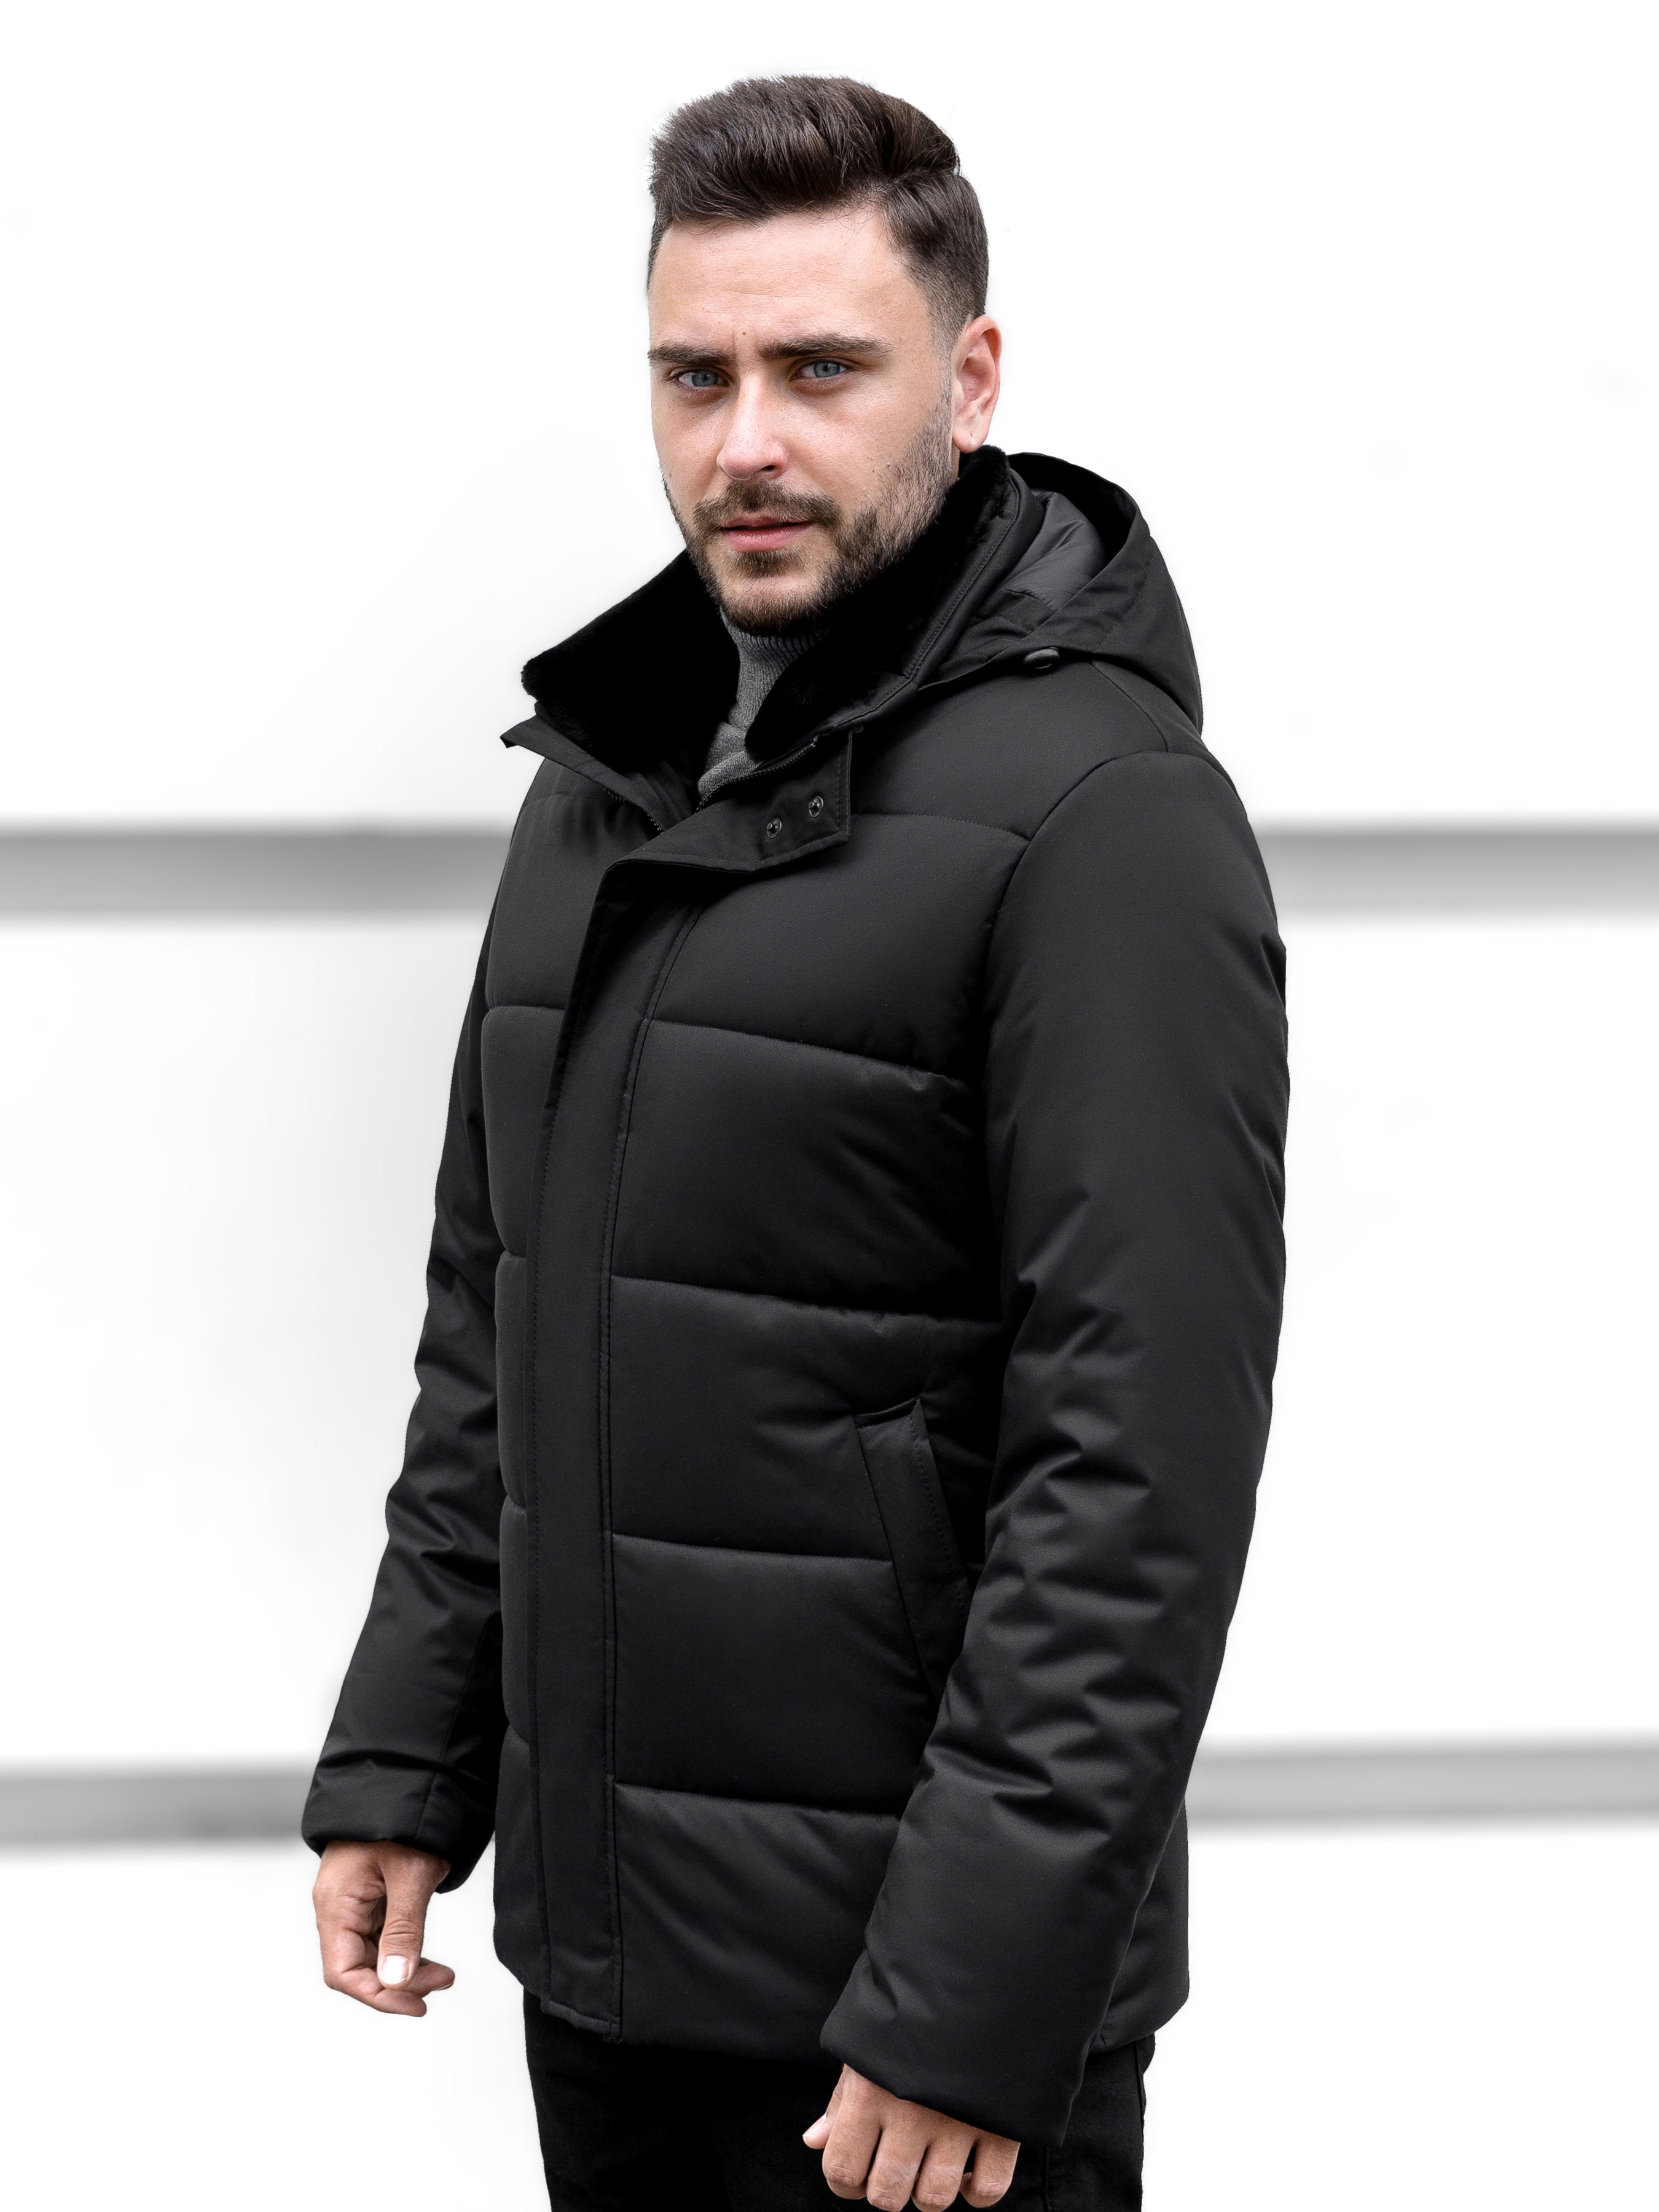 

Sun's House Зимняя куртка (B-092) Мужское, цвет - Чёрный, материал - Полиэстер